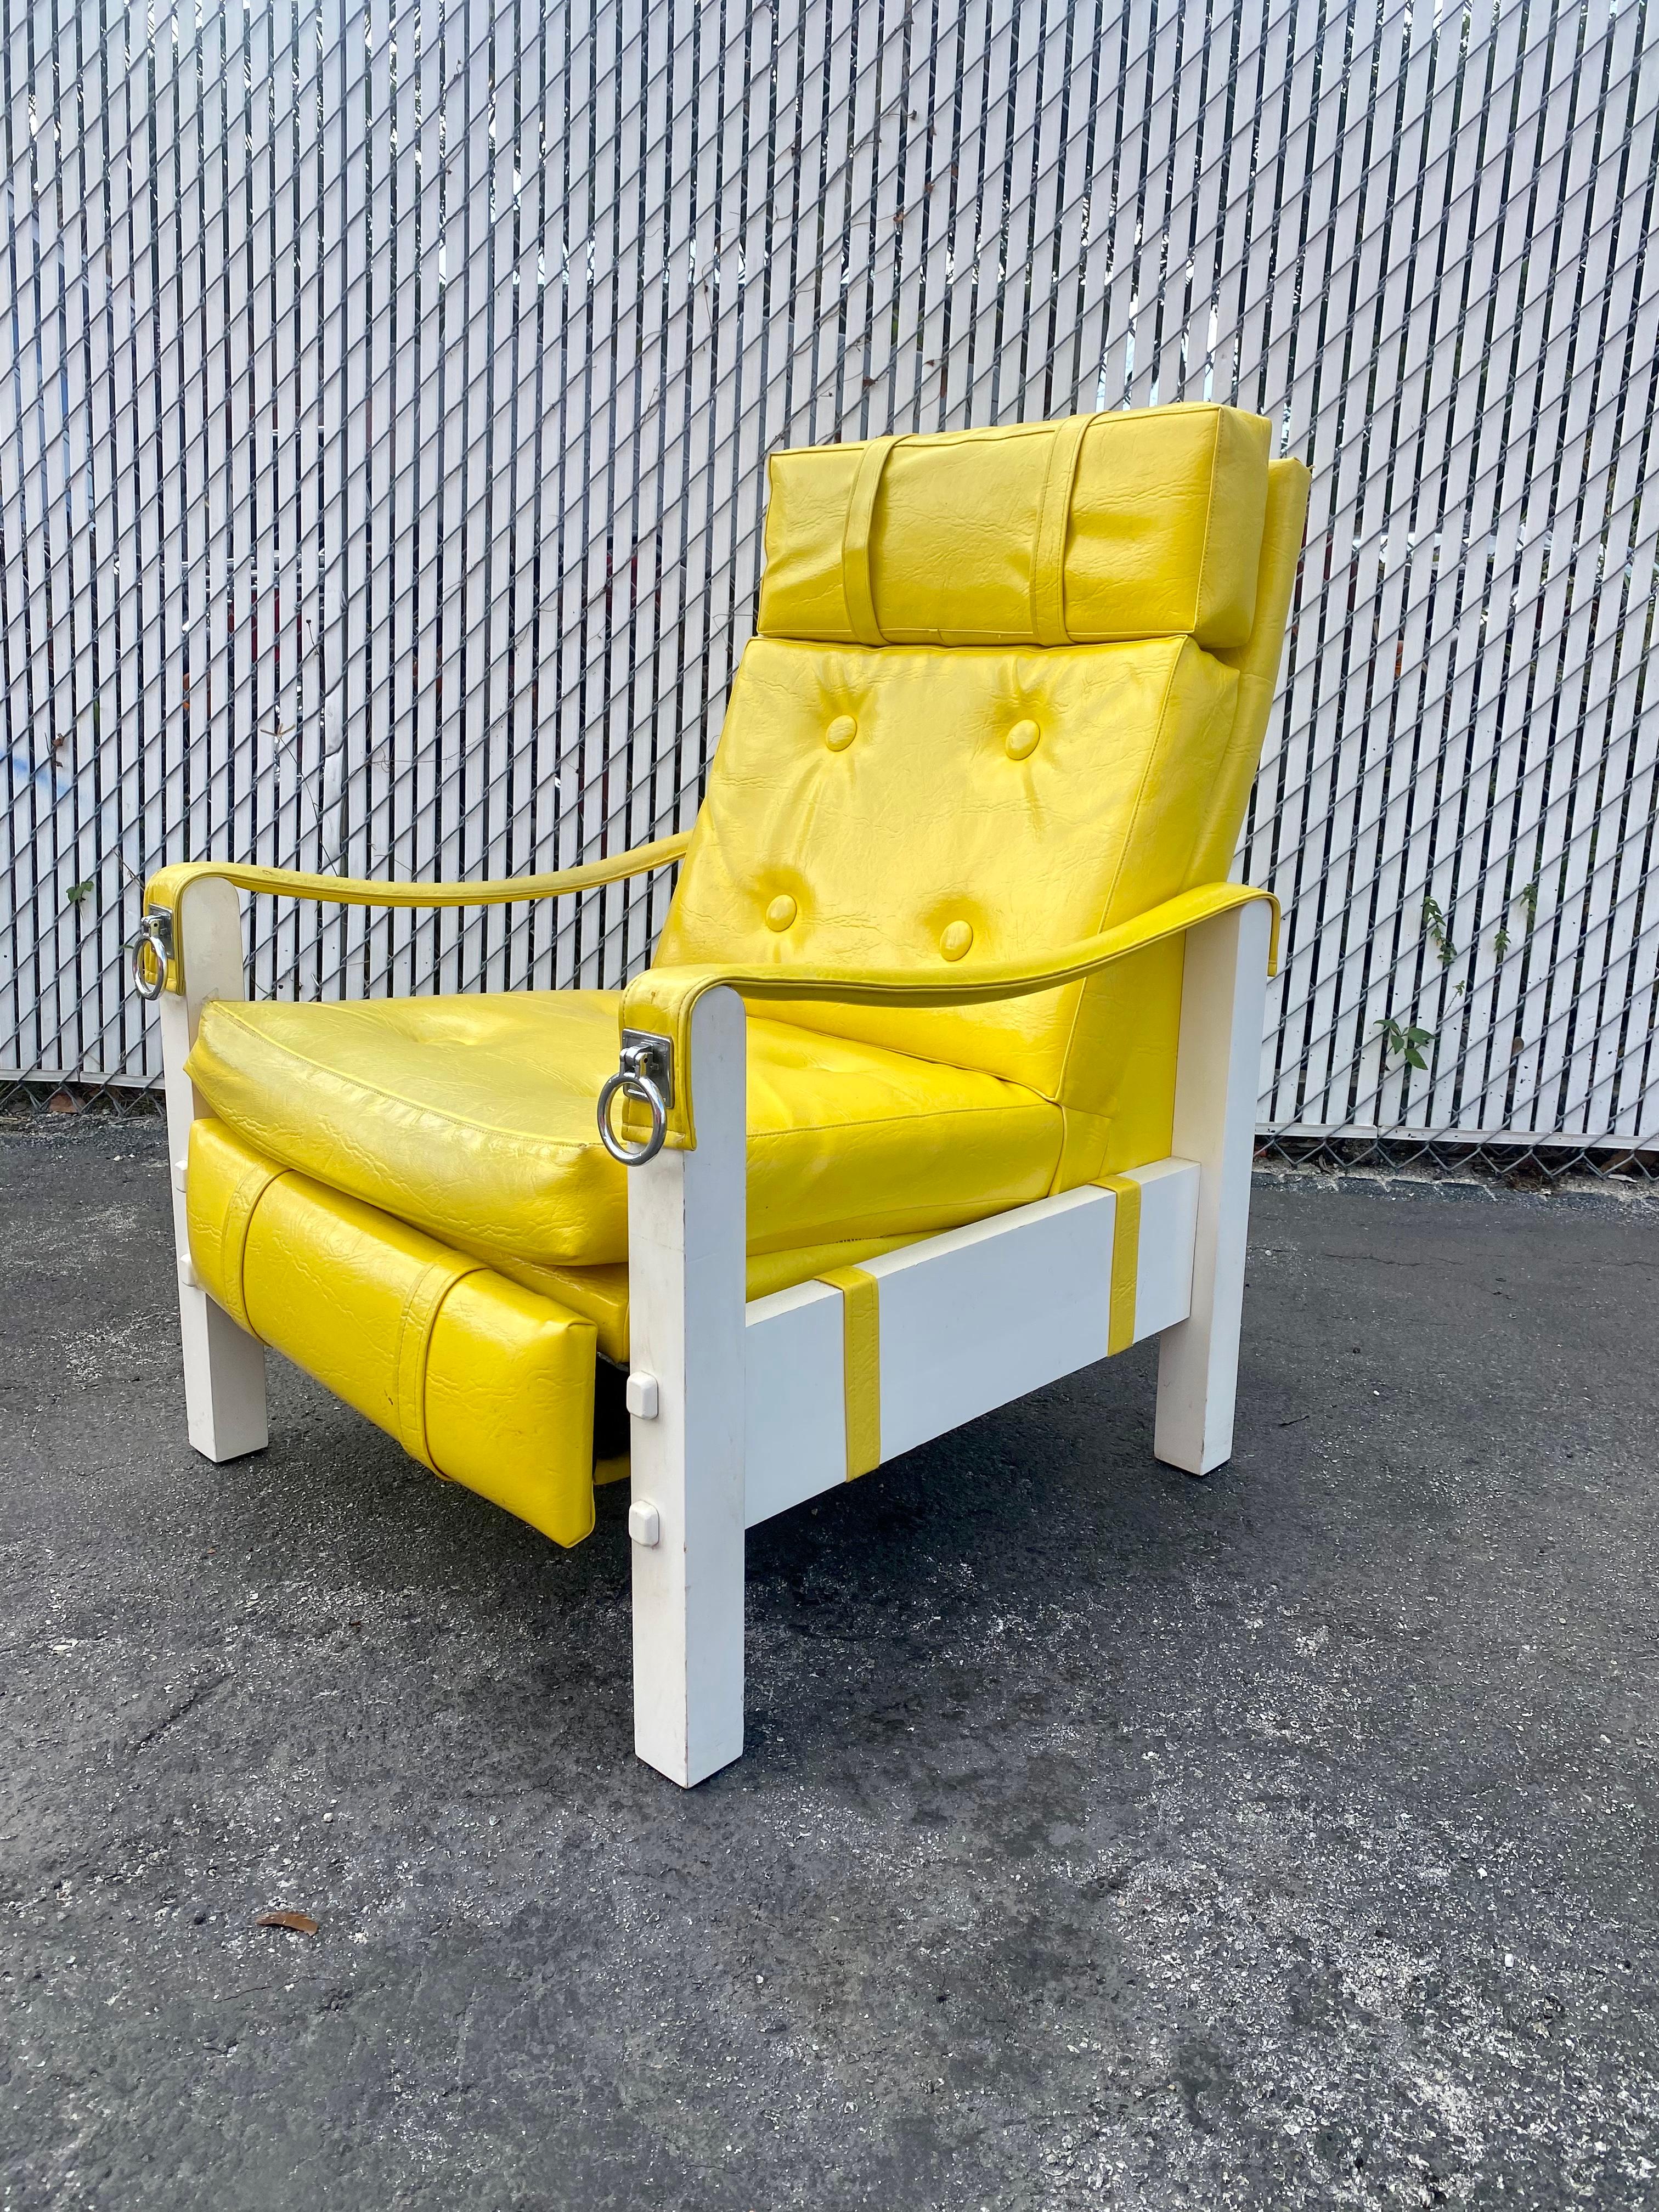 Nous vous proposons ici l'un des plus beaux fauteuils inclinables que vous puissiez espérer trouver. Le design est remarquable partout. Cette magnifique chaise est une pièce d'apparat qui est également extrêmement confortable et pleine de